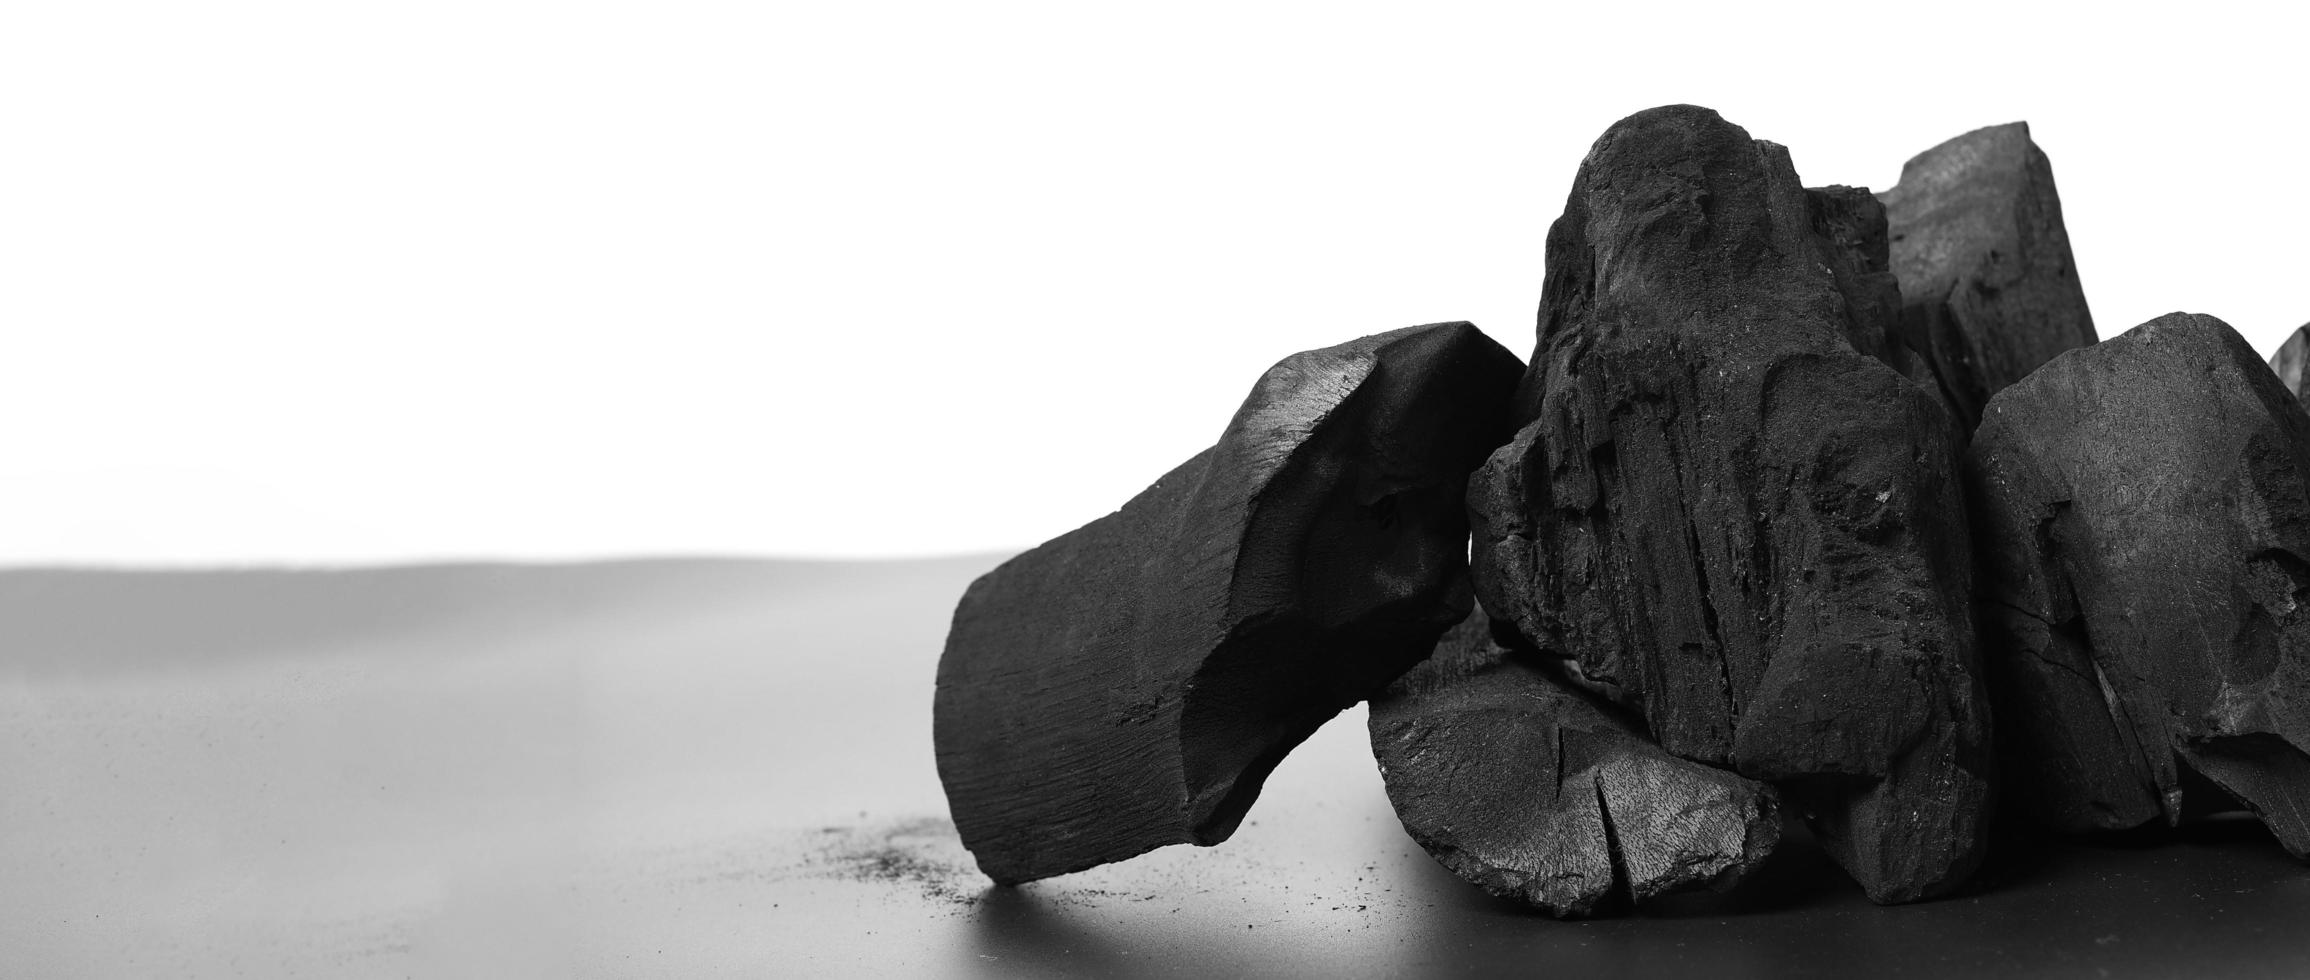 houtskool. zwarte houtskool op zwarte getextureerde vloer. gebruikt om te koken foto